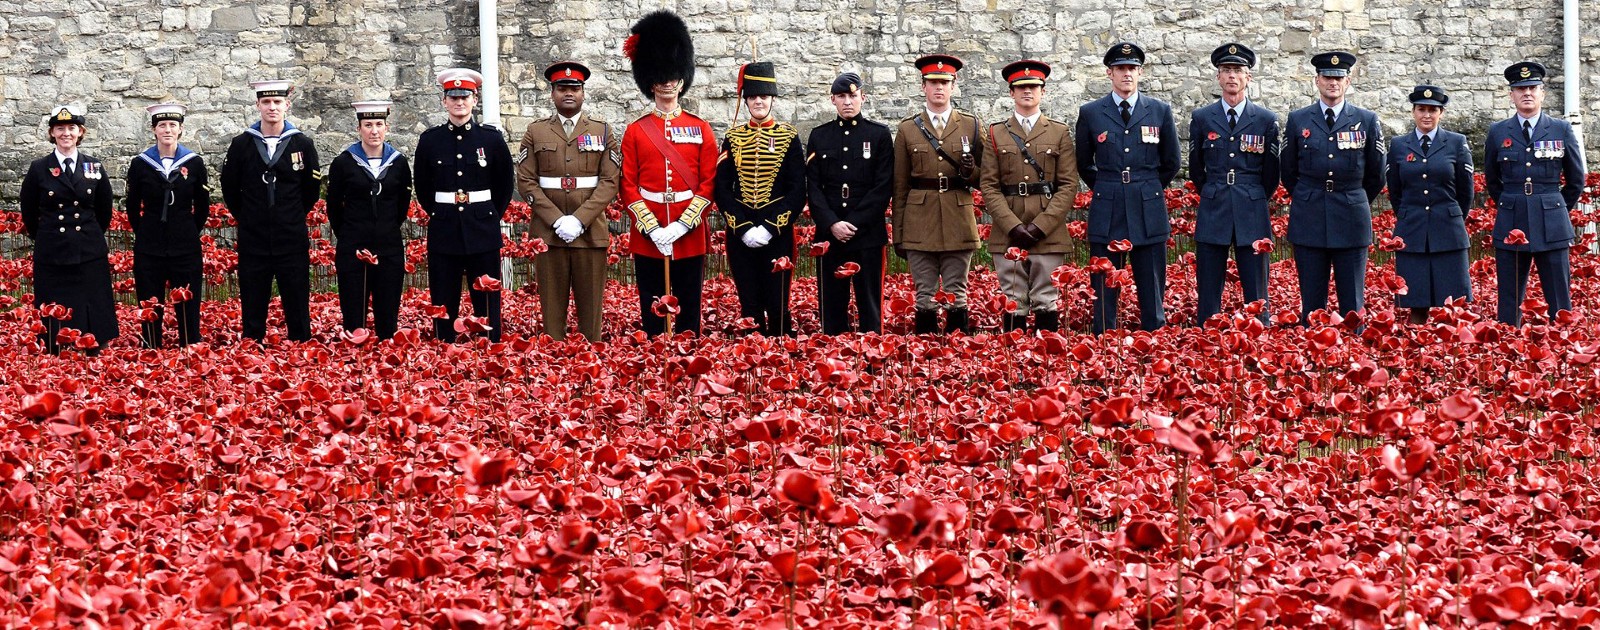 &quot;החבר'ה הטובים&quot; התמונה נלקחה מאתר The Royal British Legion לקראת אירועים יום הזיכרון הבריטי בשנת 2017.